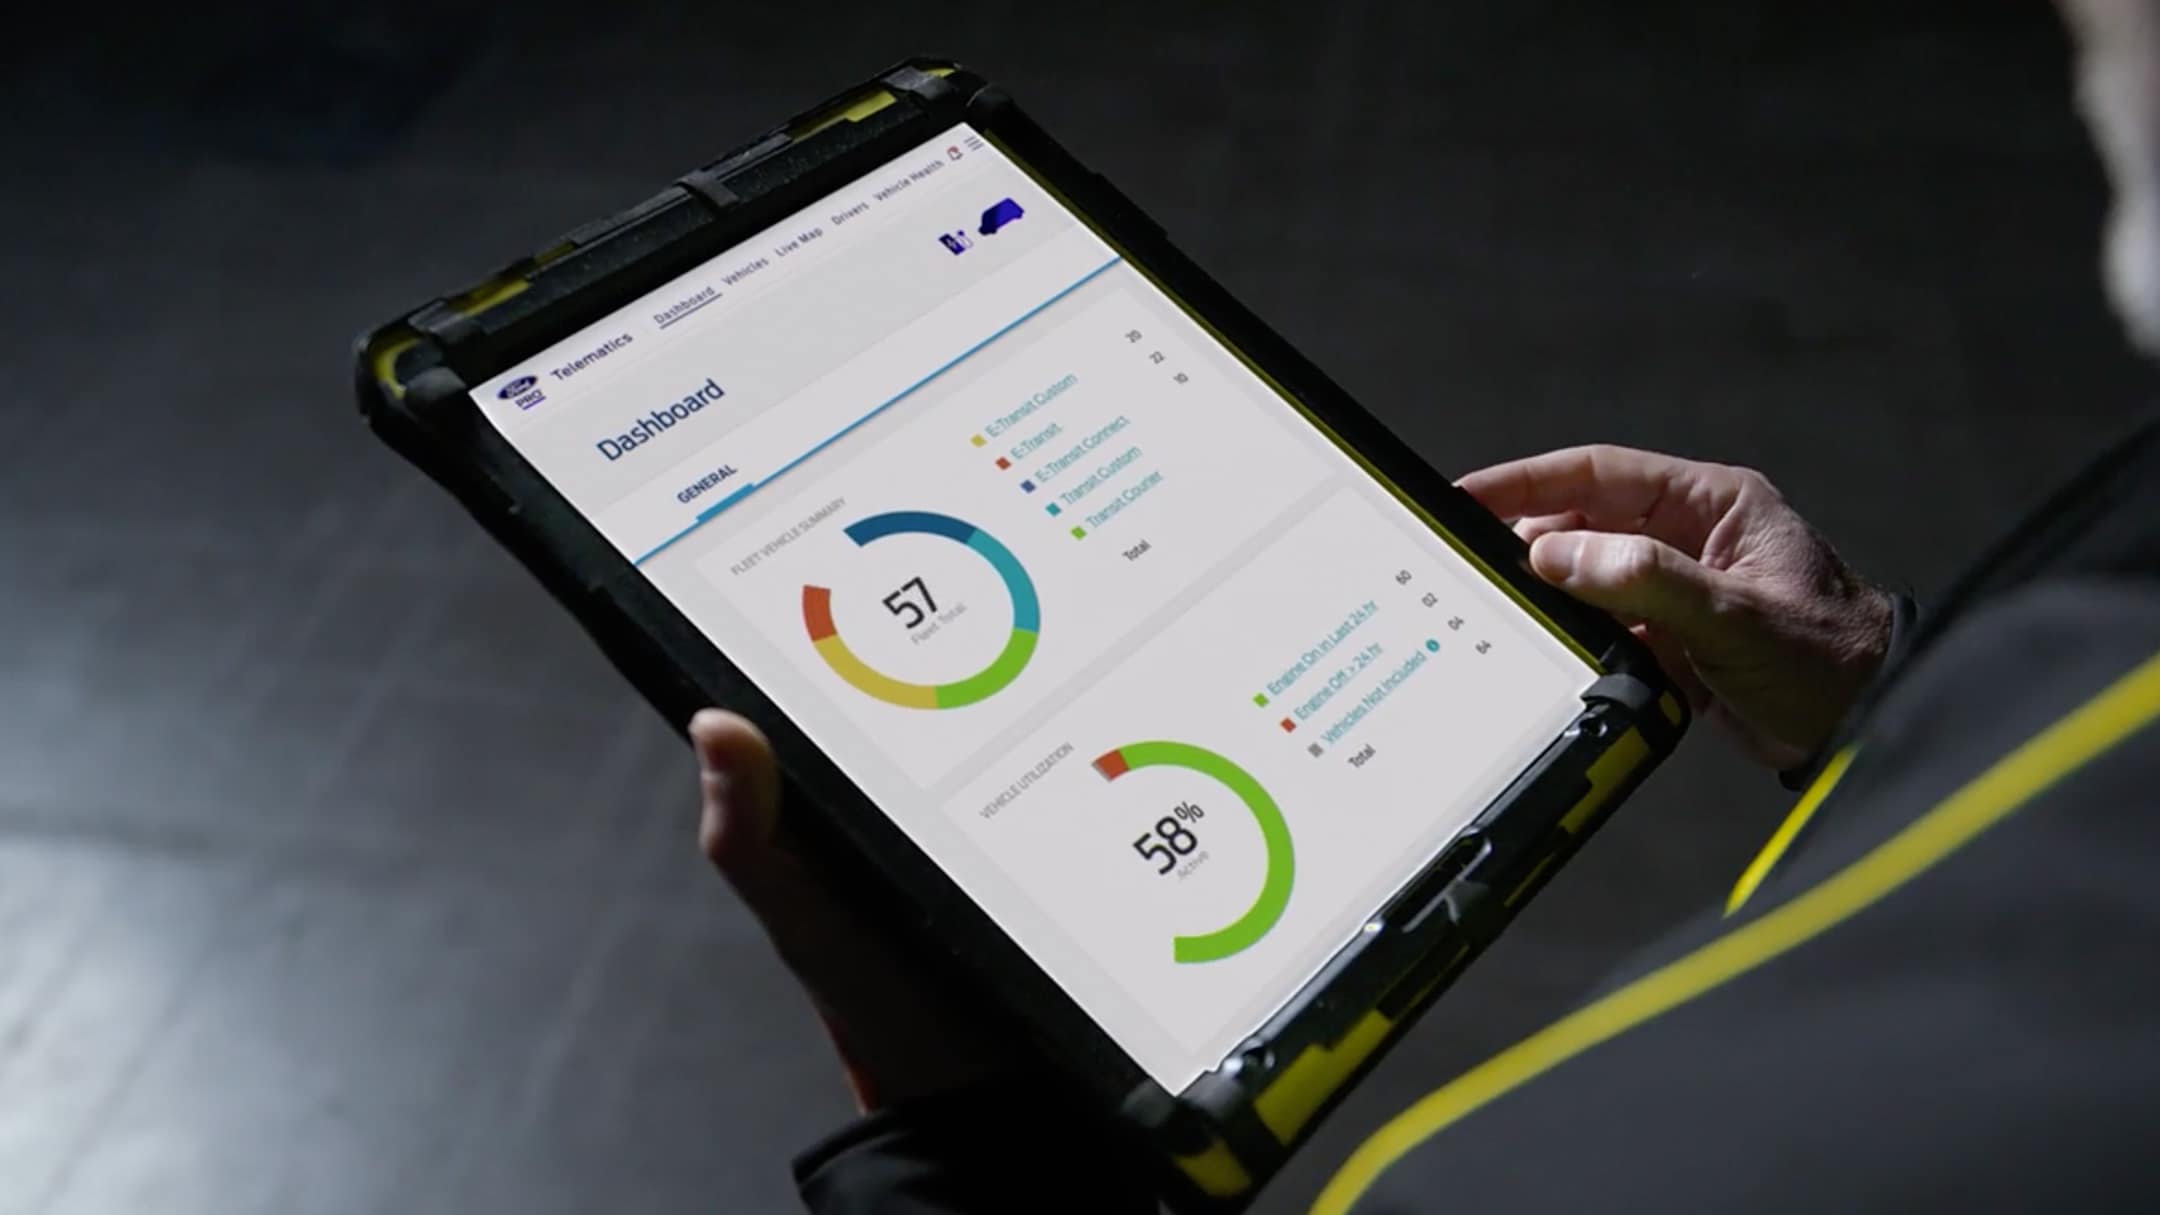 Ford Pro, tableau de bord des services intégrés Ford Pro sur tablette